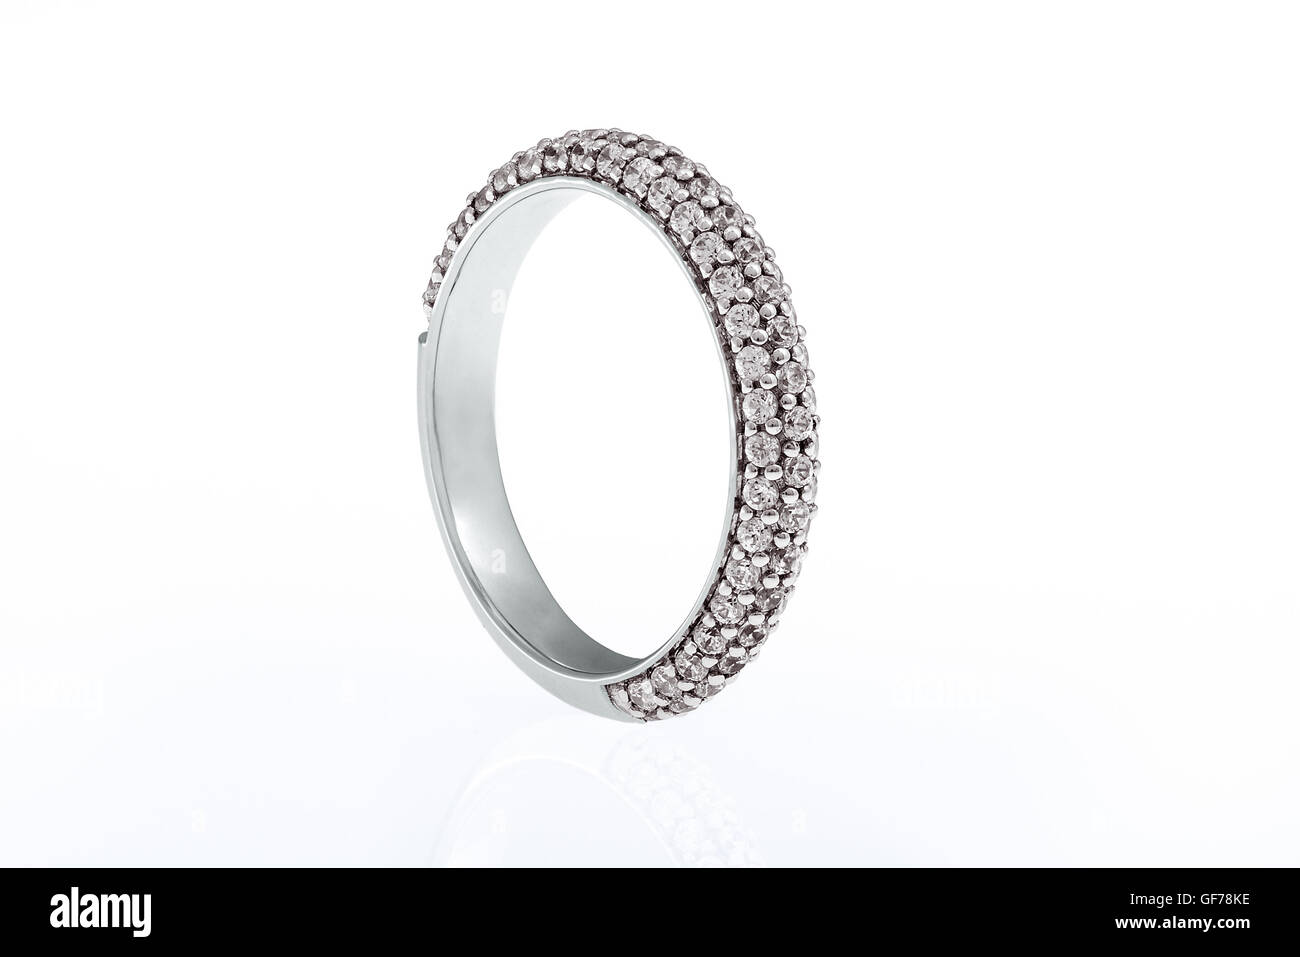 White gold wedding engagement ring on white background Stock Photo